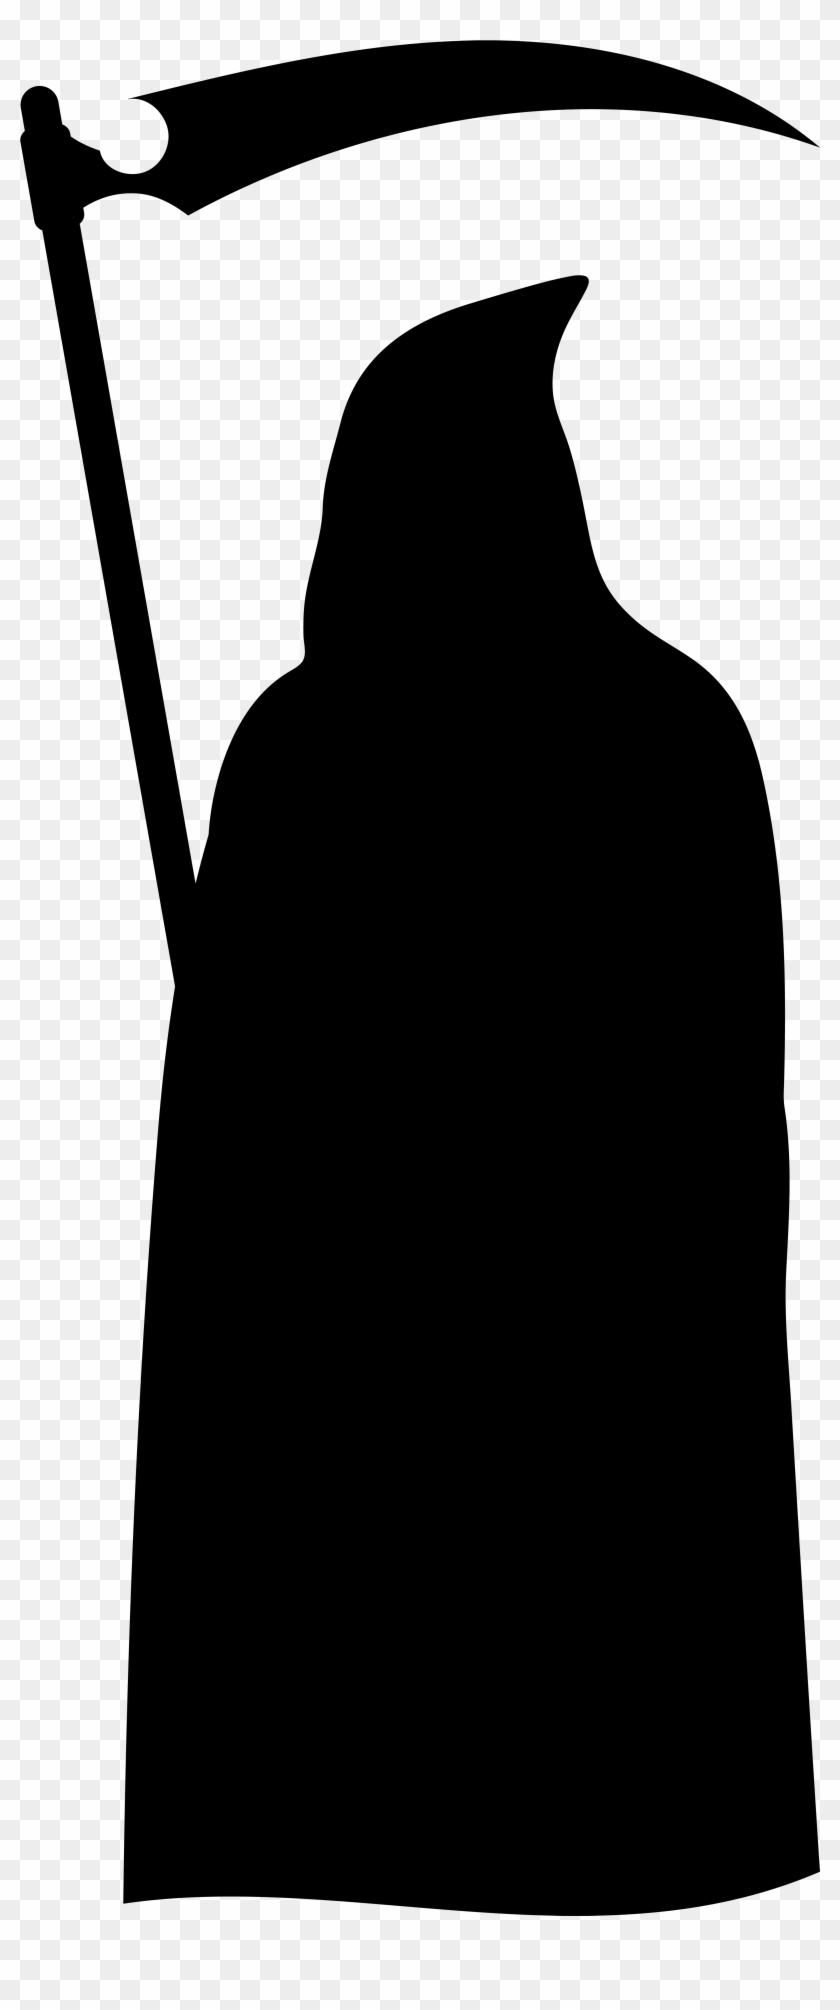 Grim Reaper Silhouette Png Clip Art Imageu200b Gallery - Silhouette Of The Grim Reaper #61751